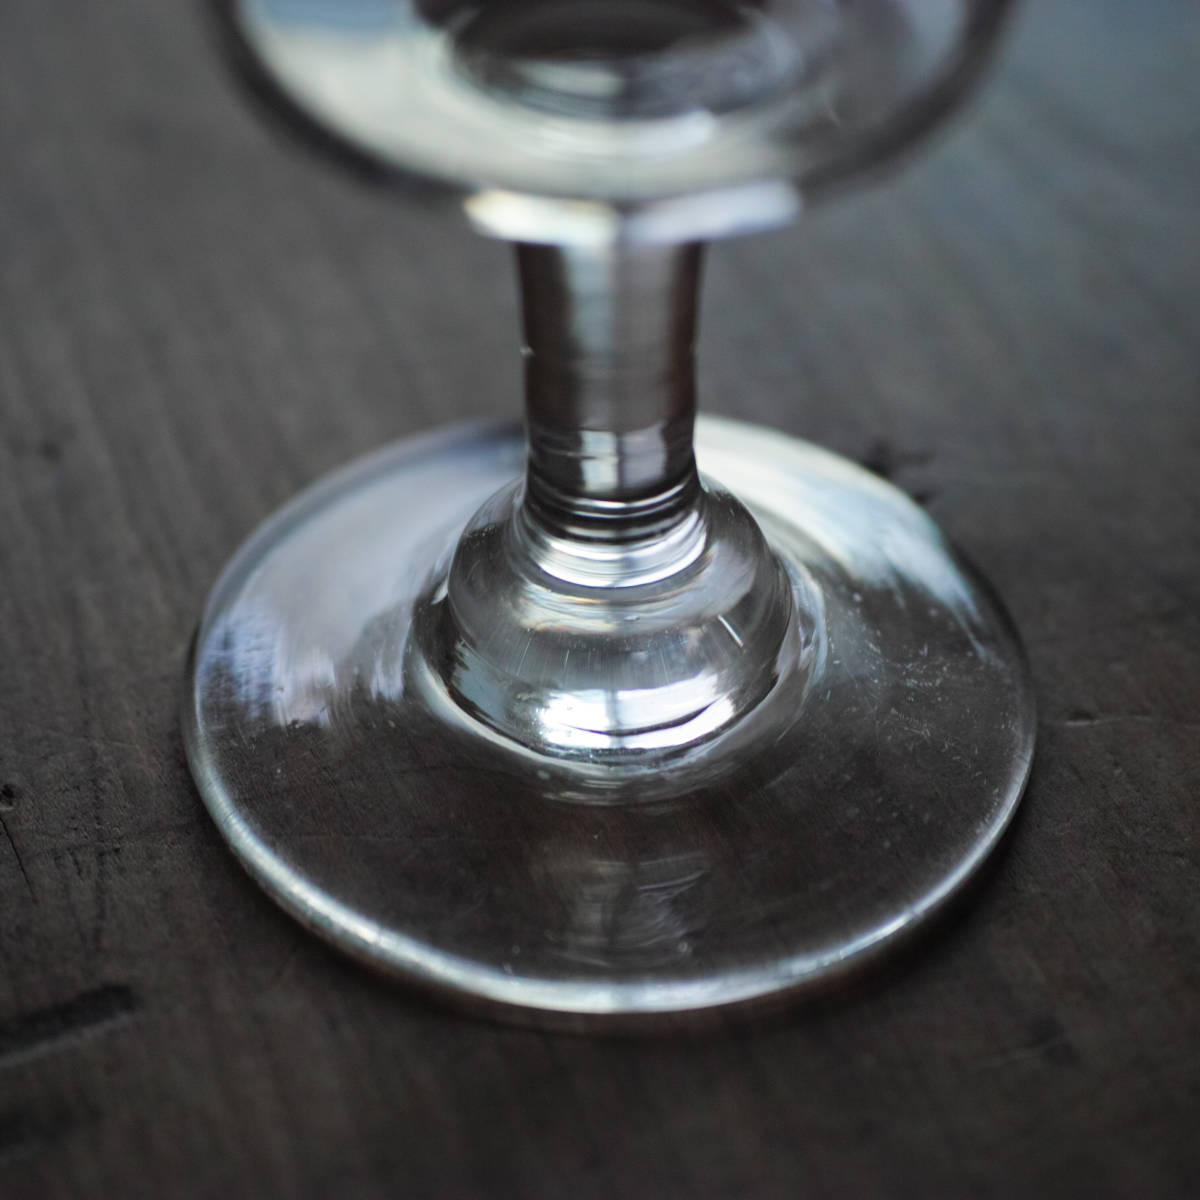 1800年代 フランス ビストログラス 手吹きガラス / Bistro Glass / アンティーク 19世紀 骨董 古道具 硝子 ワイングラス c